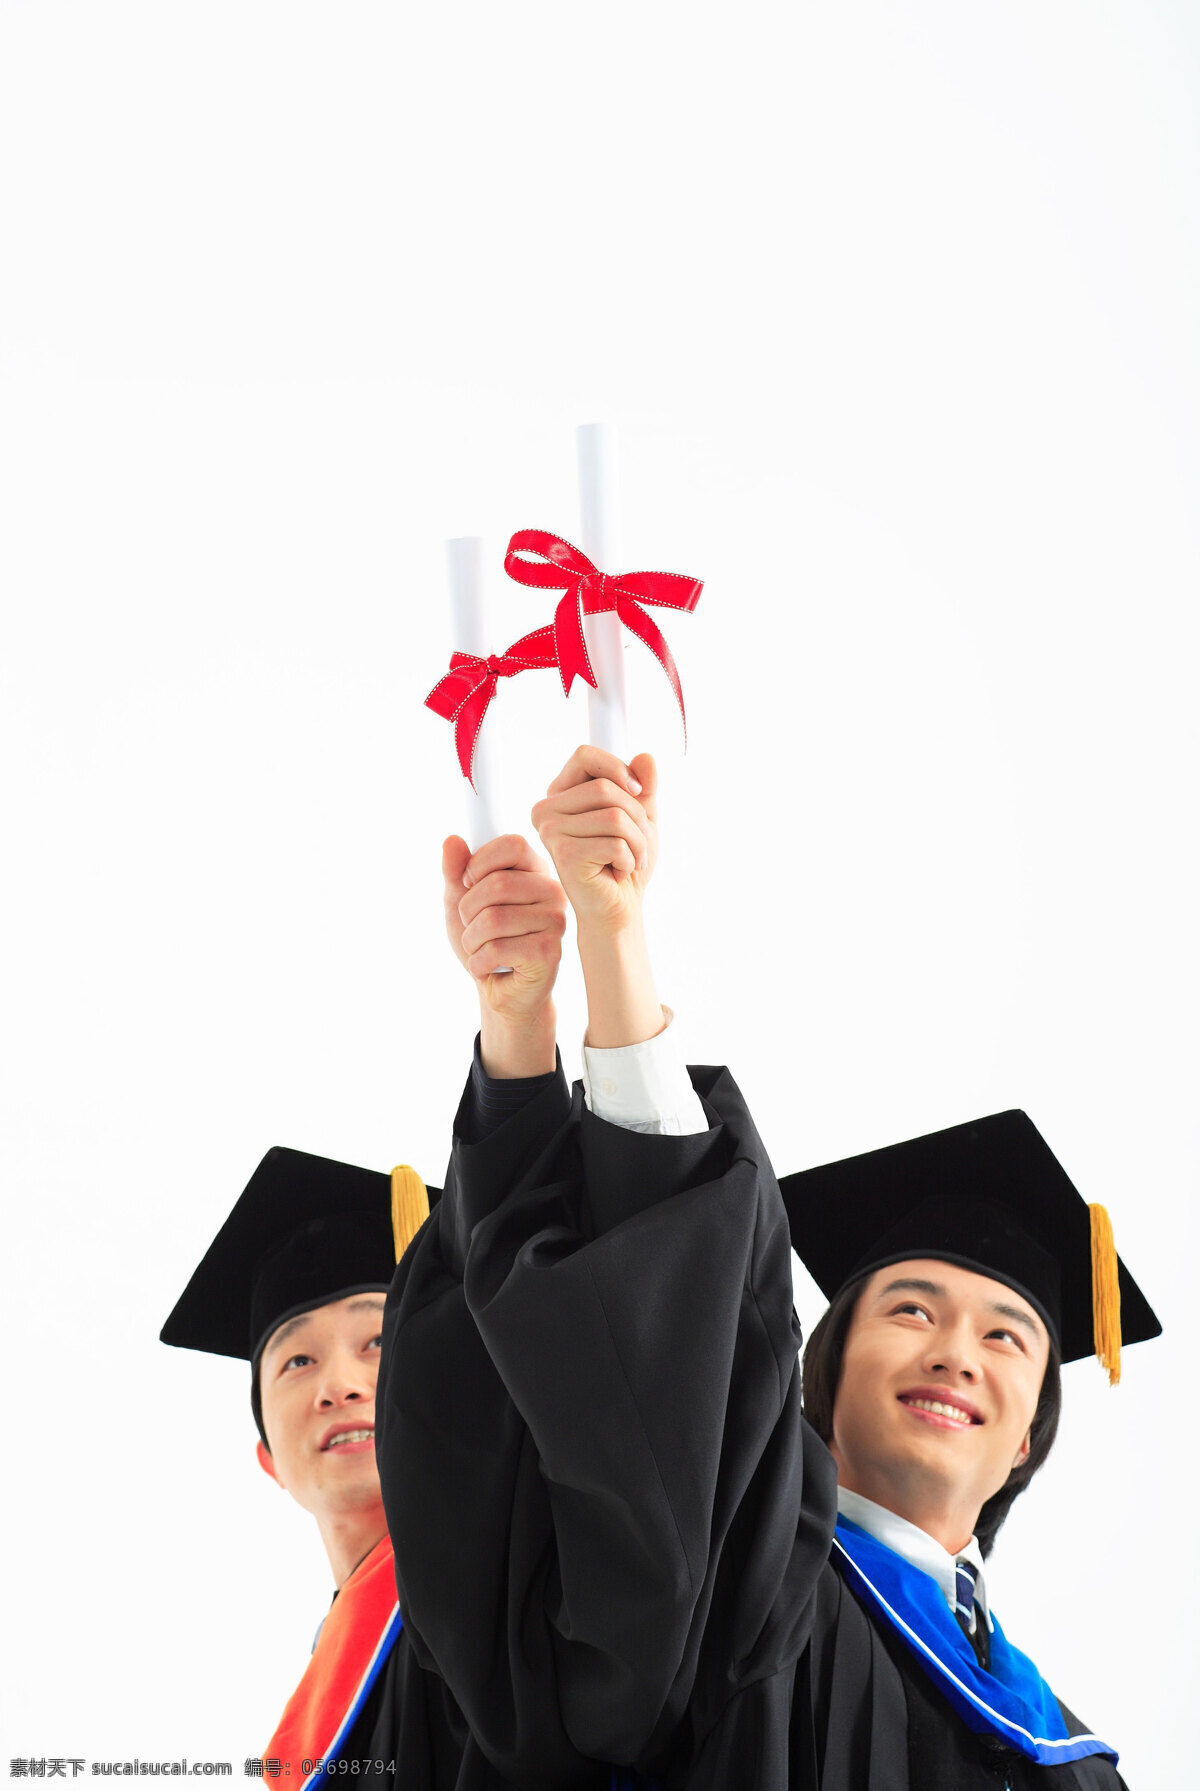 举 毕业 证书 两个 博士 男人 学生 服装 博士服 博士帽 微笑 开心 并肩 亲密 同学 朋友 友情 举手 自信 阳光 资料 毕业证书 高清图片 生活人物 人物图片